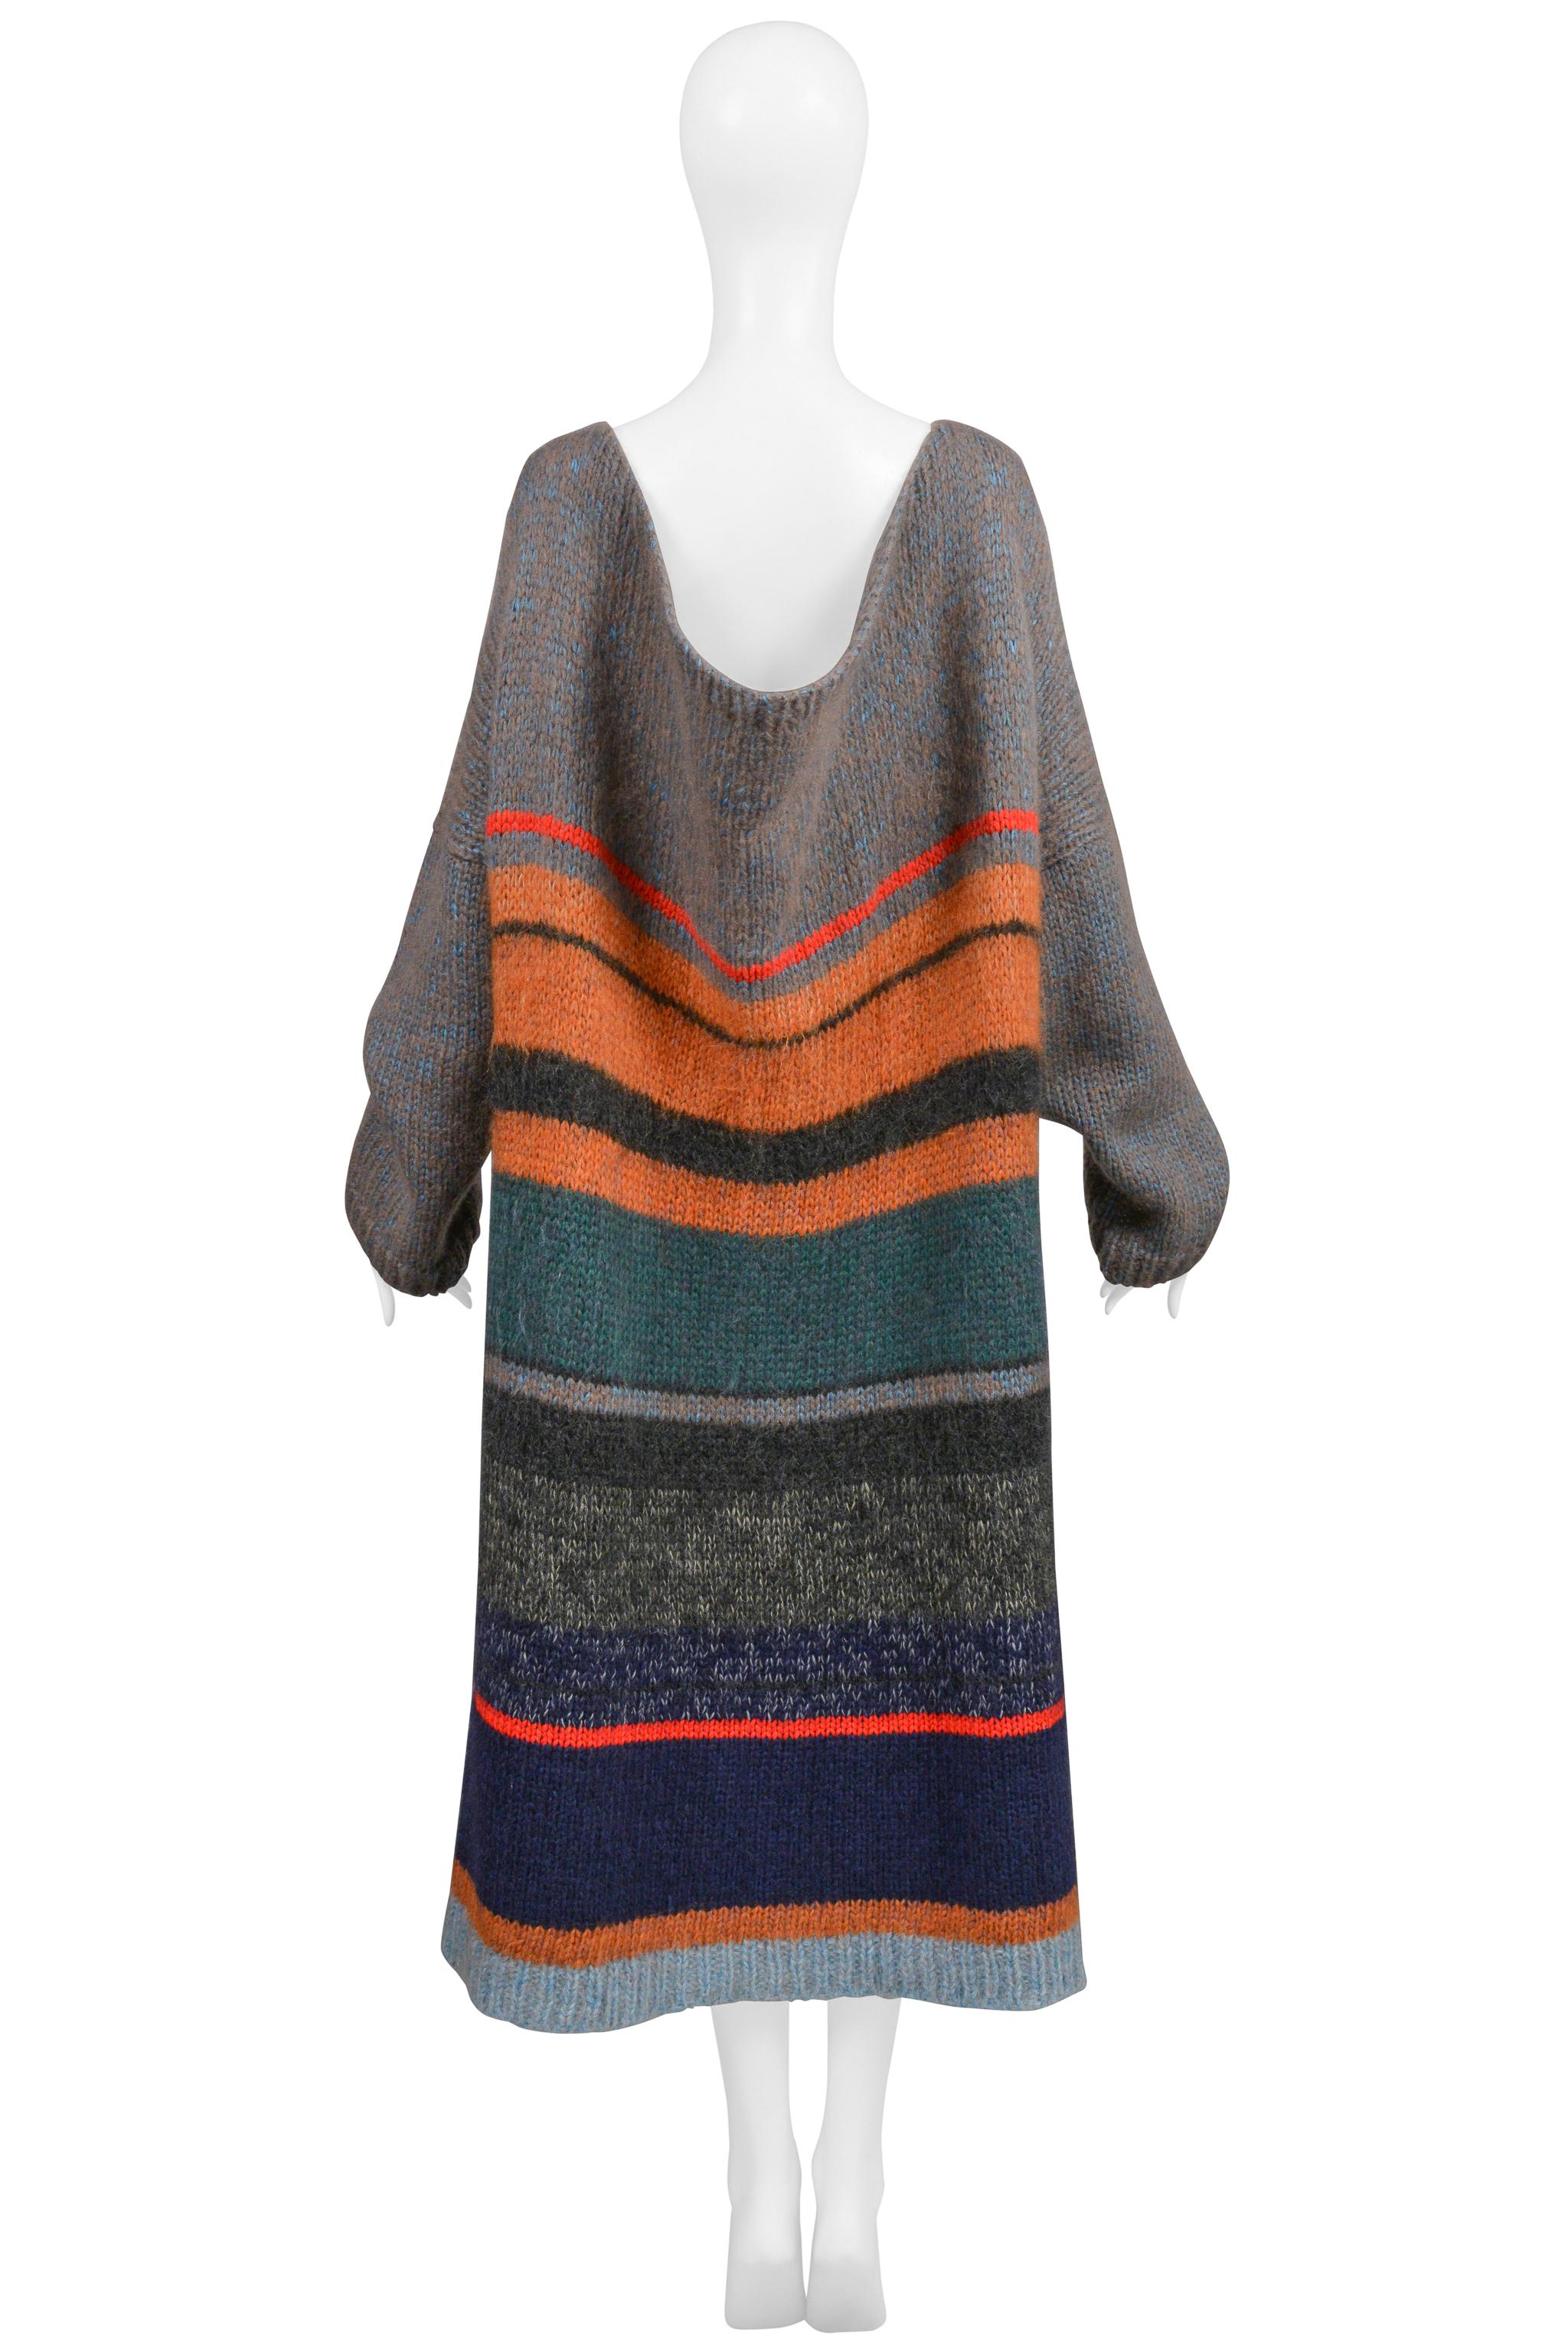 Yohji Yamamoto 1998 Multi Color Stripe Oversize Maxi Sweater In Excellent Condition For Sale In Los Angeles, CA